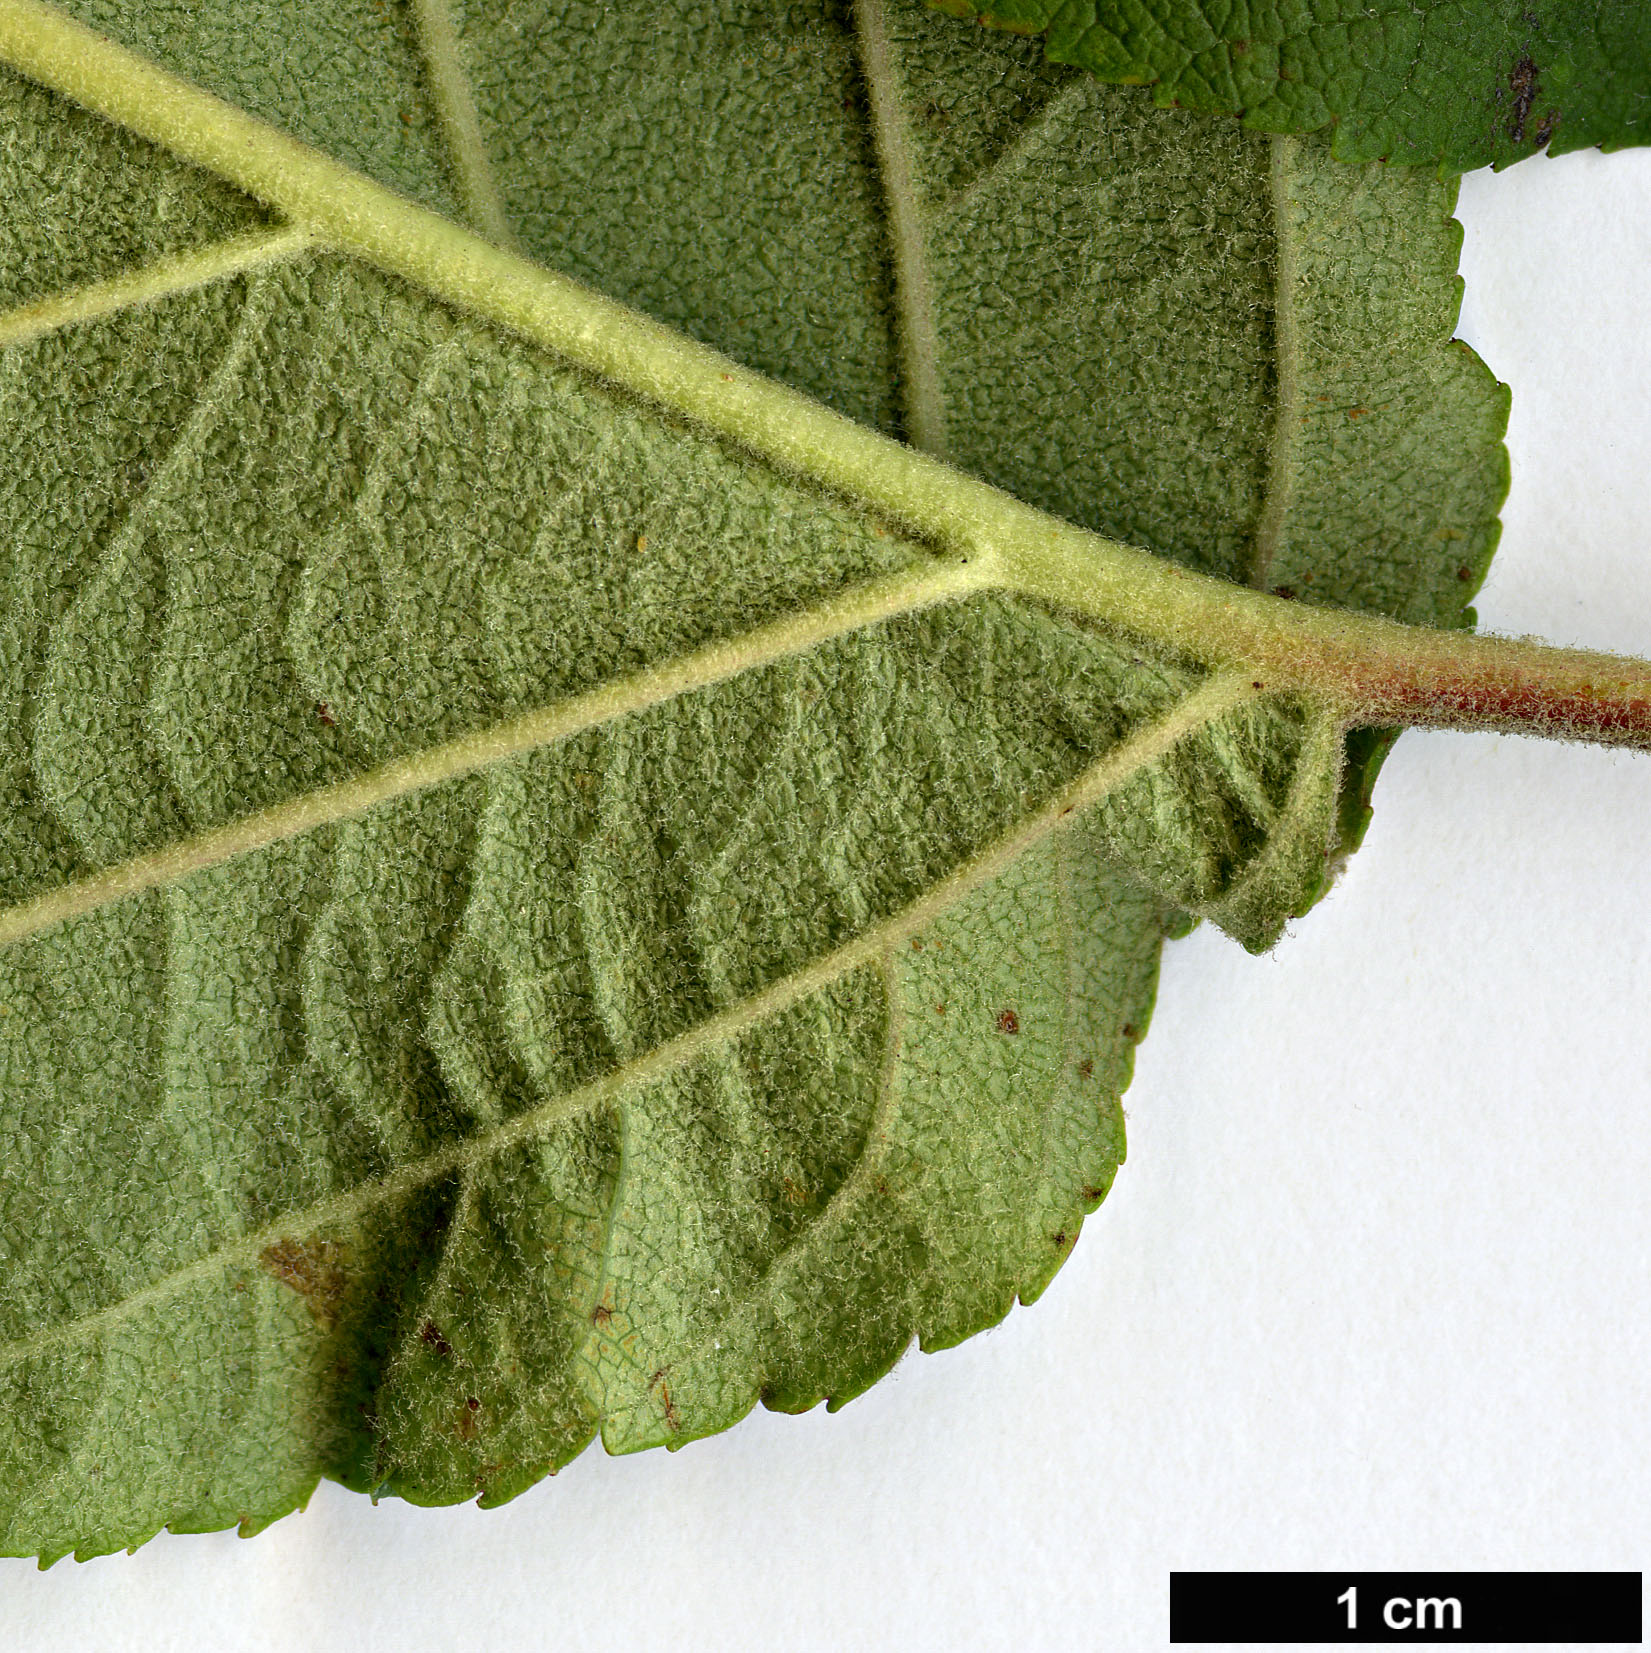 High resolution image: Family: Rosaceae - Genus: Malus - Taxon: yunnanensis - SpeciesSub: var. veitchii